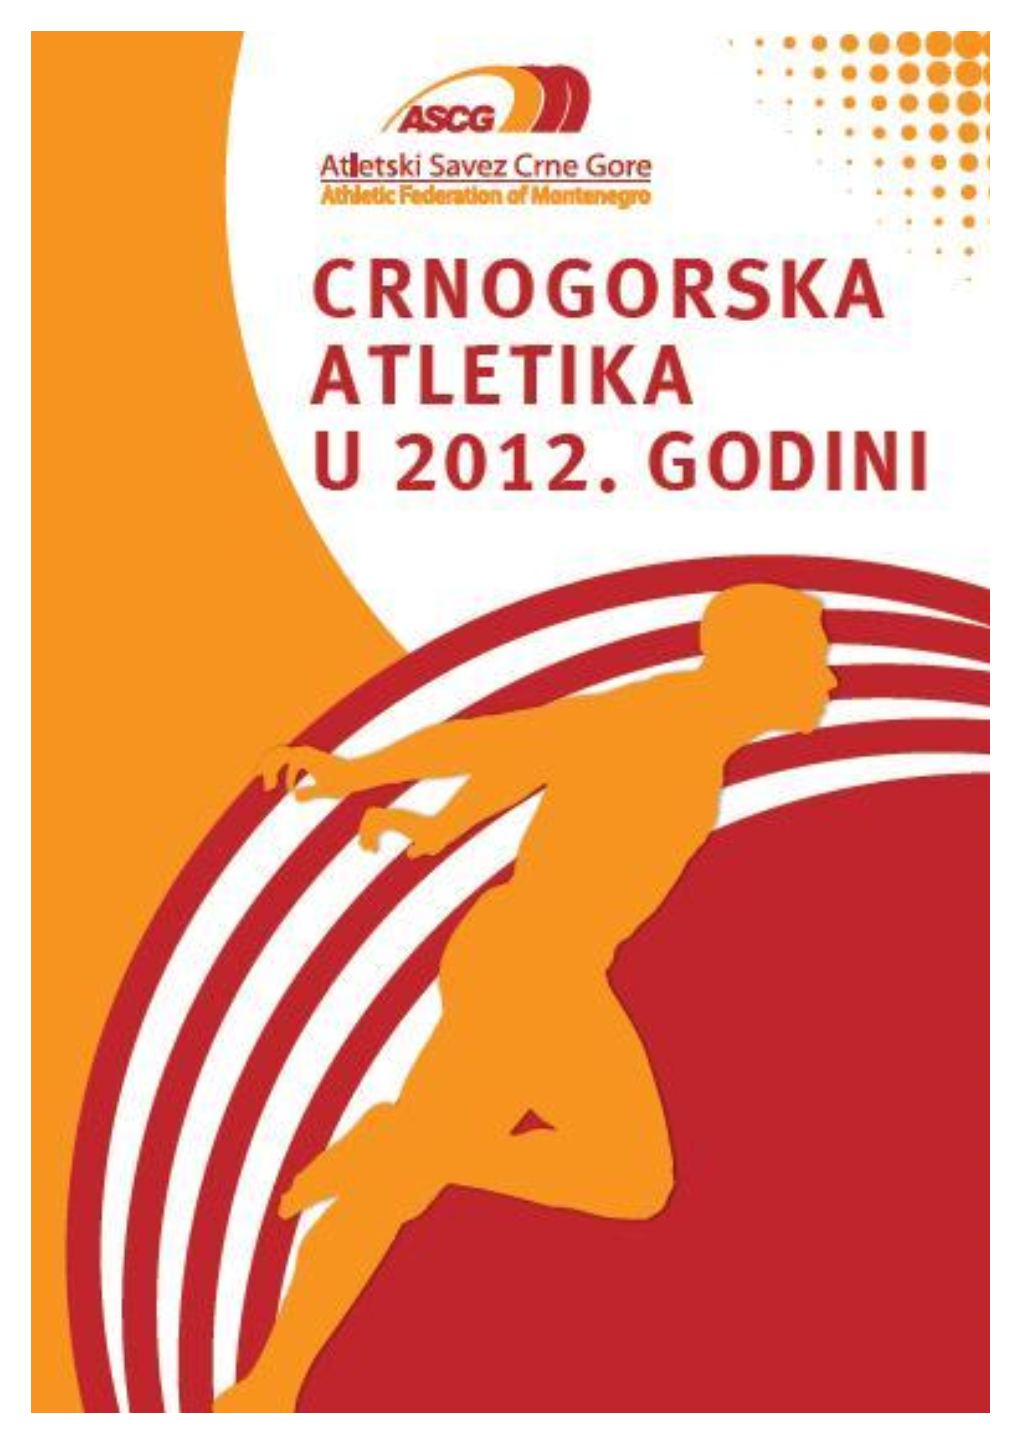 Crnogorska Atletika U 2012.Godini